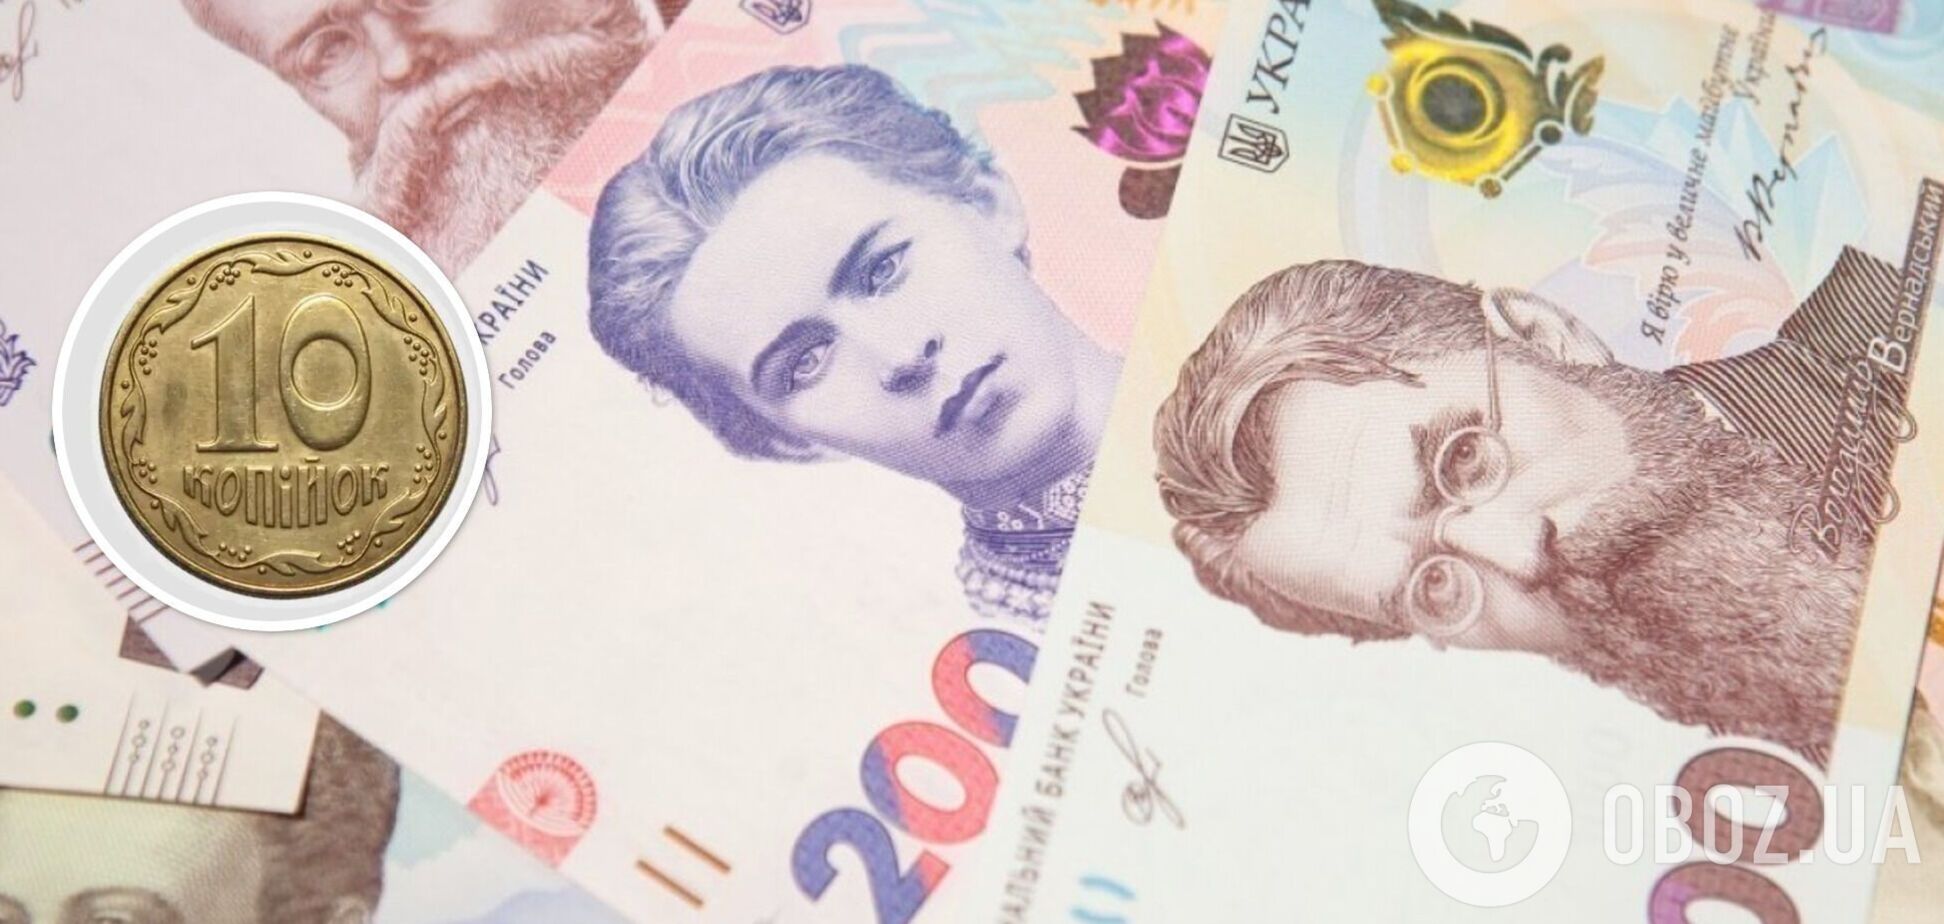 Скільки заплатять за старі українські монети у 10 копійок